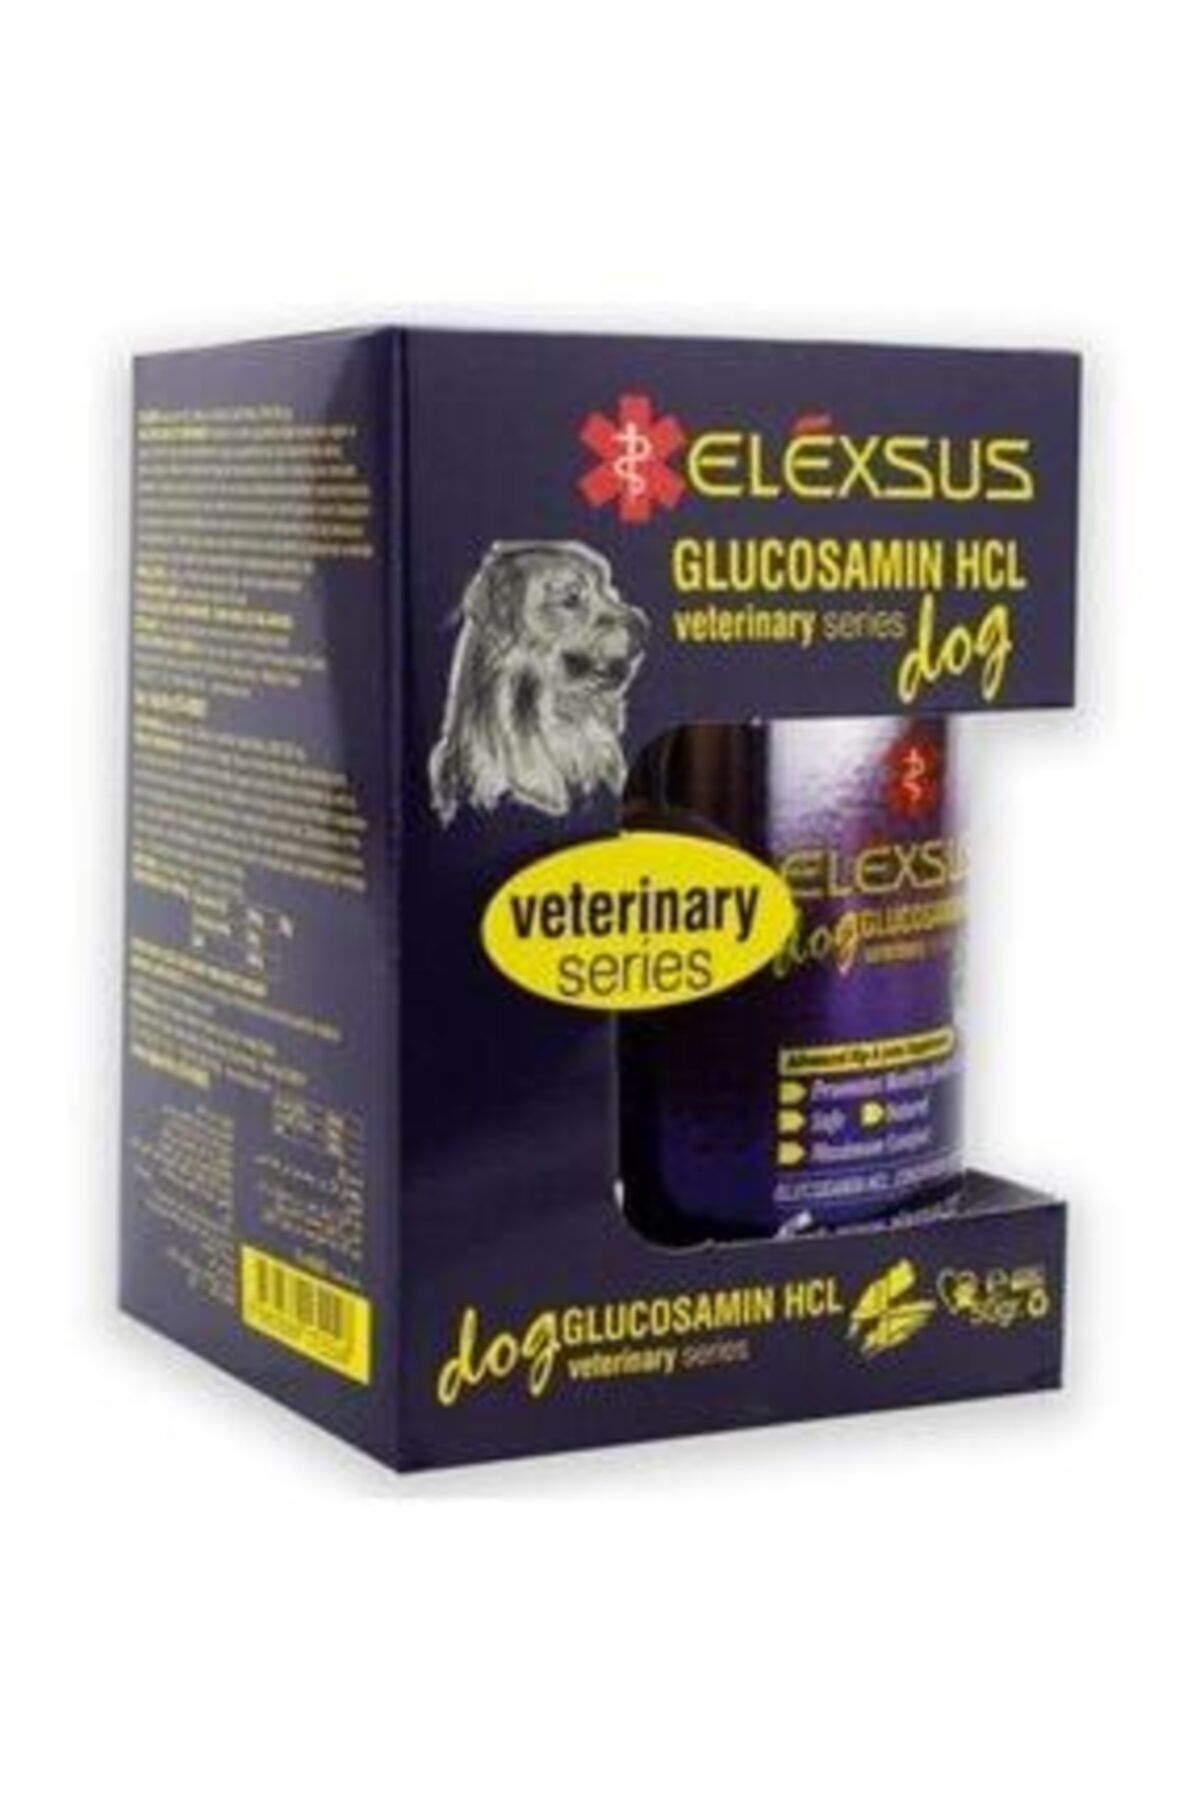 Elexsus Köpekler Için Eklem Güçlendirici Glucosamin Hcl Tableti 50gr